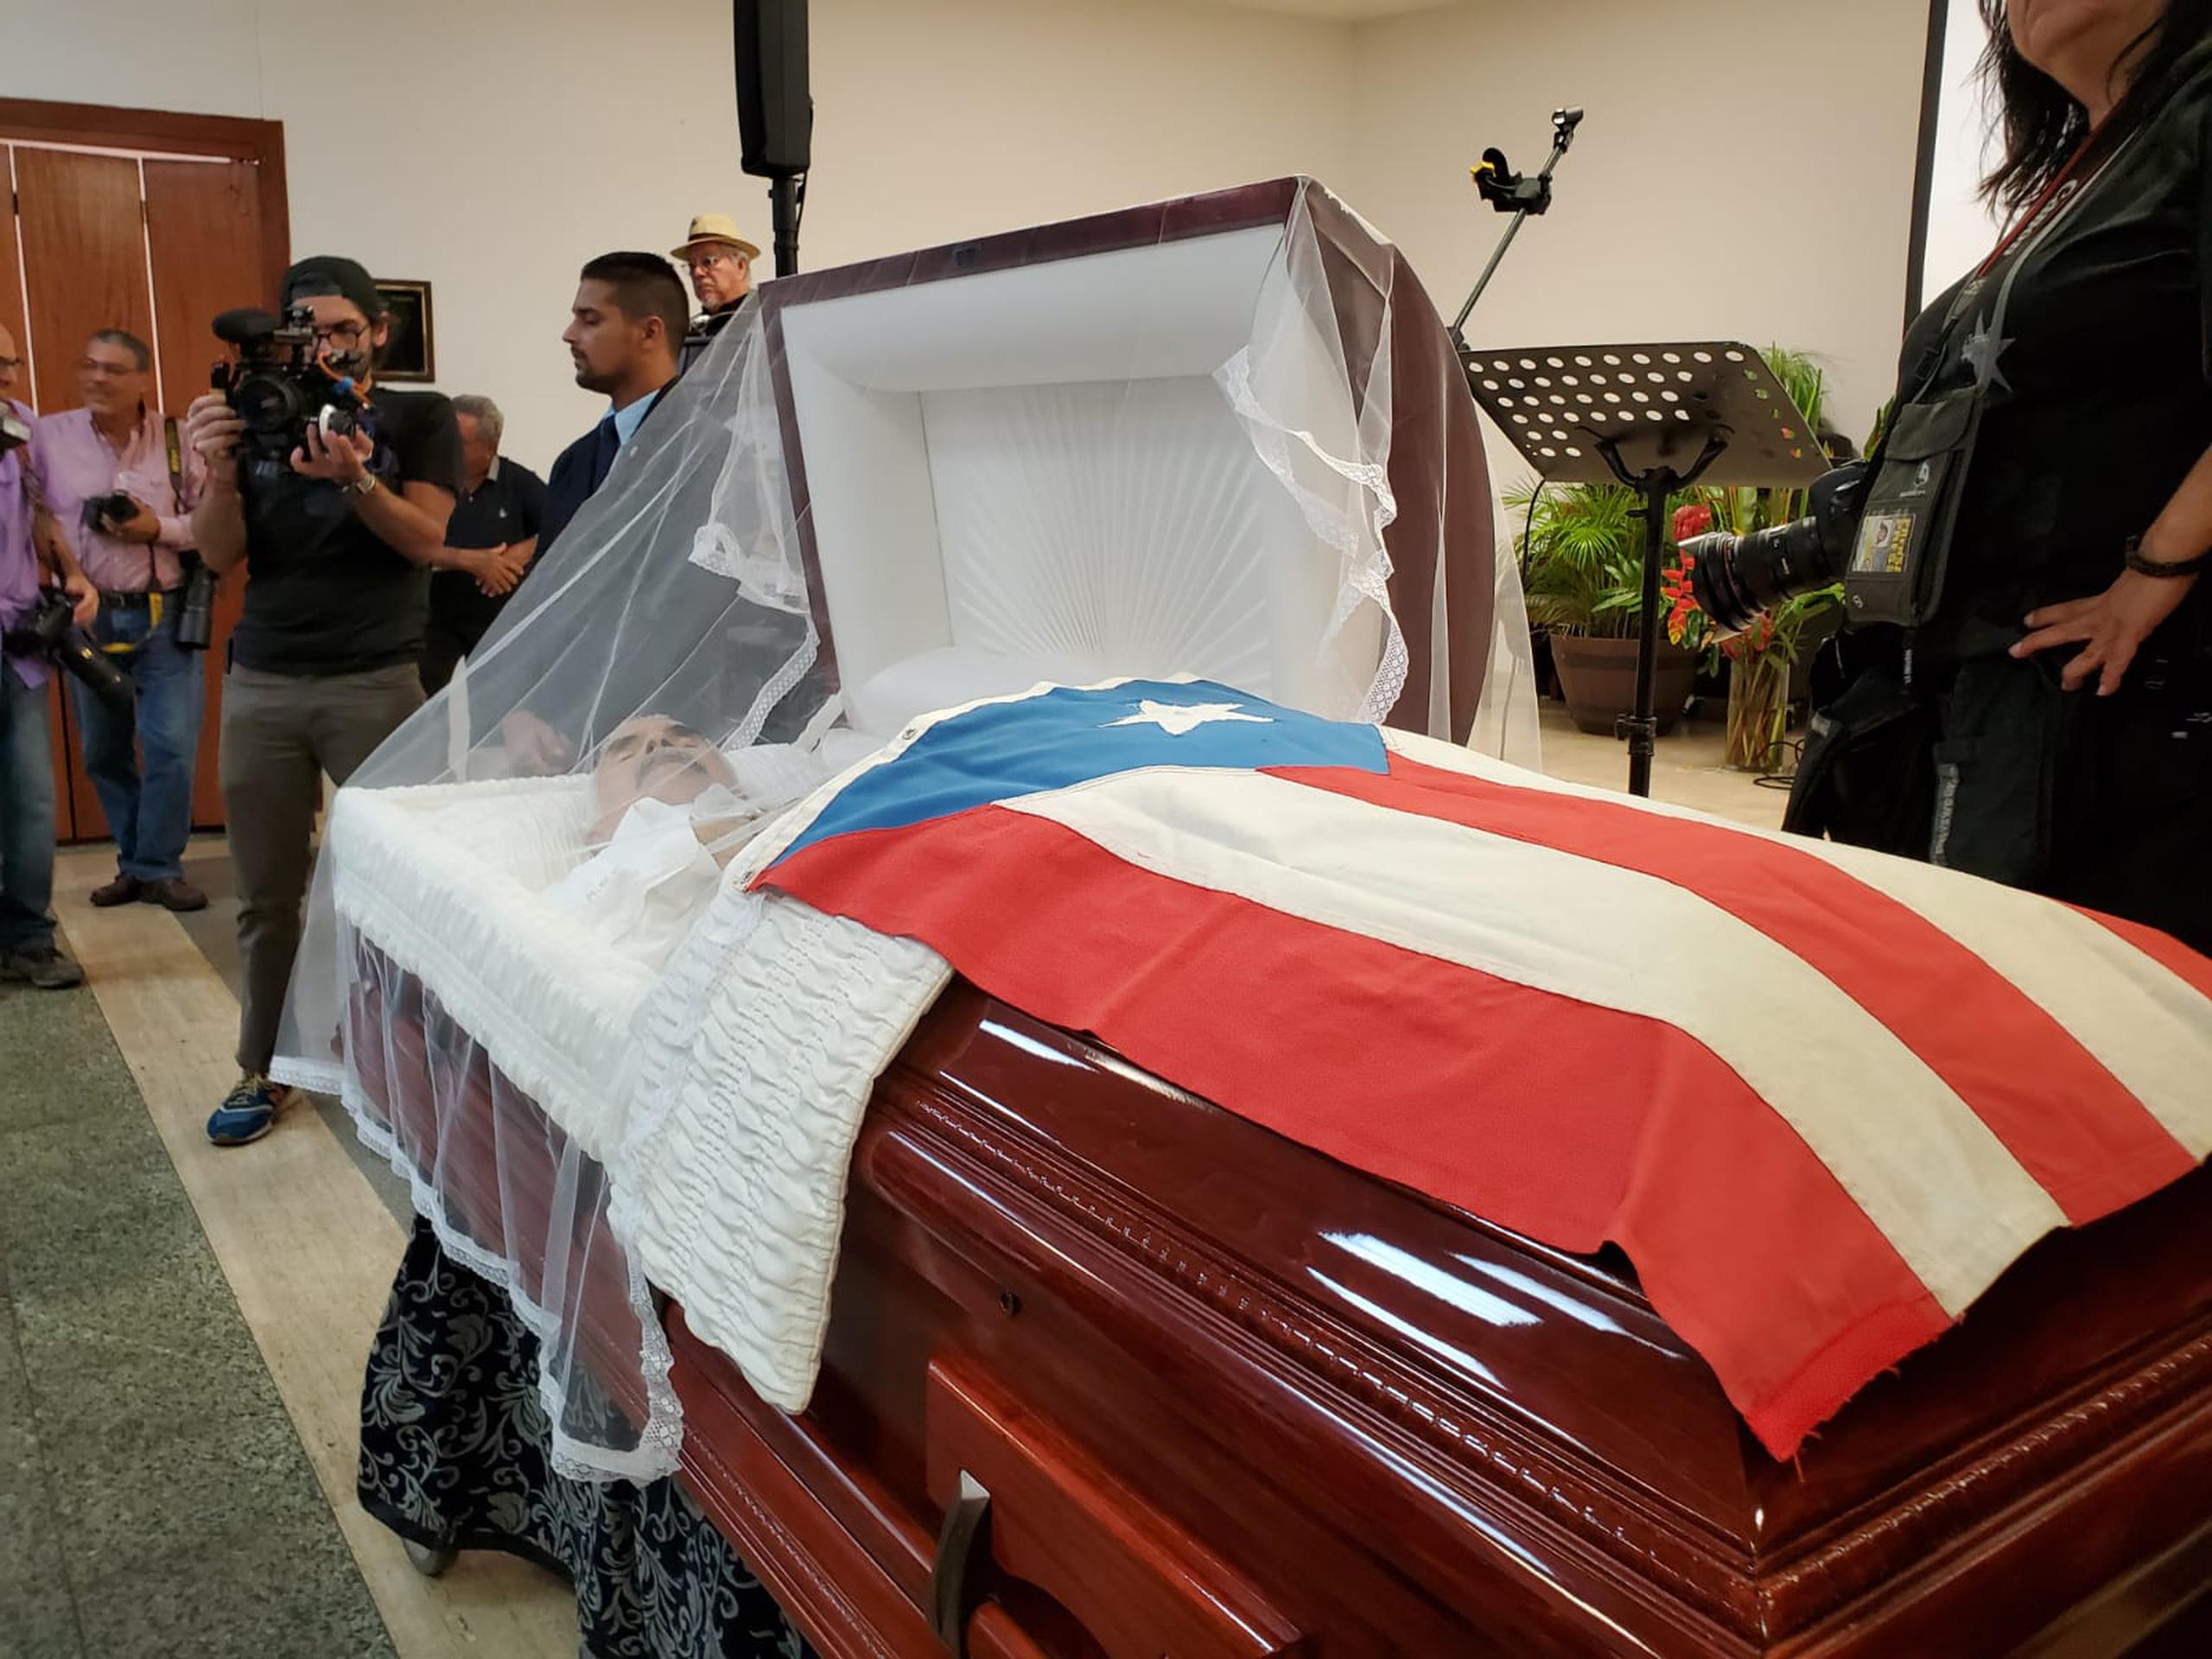 A eso de las 9:00 a.m. arribó el féretro arropado por una bandera puertorriqueña confeccionada por la activista y educadora Isabelita Rosado en 1979.